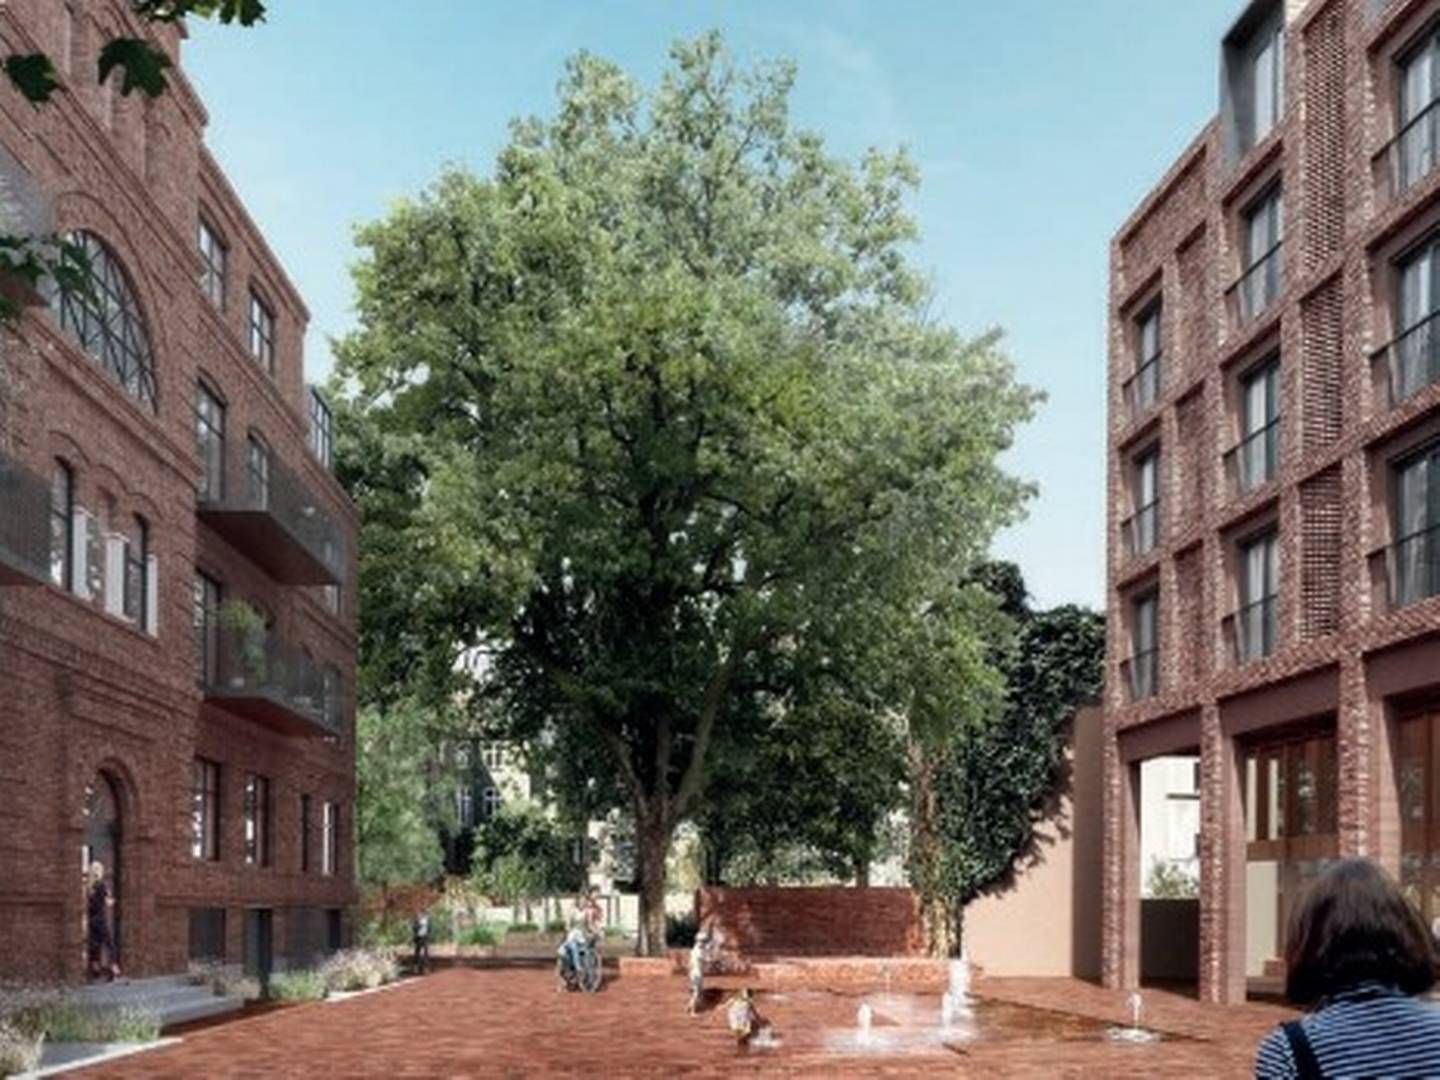 Boliger skal udfylde mere end 160 år gamle skolebygninger på Frederiksberg. Til højre ses en nybygning, mens bygningen til venstre er en eksisterende bygning, der renoveres og nyindrettes. Visualisering: Frederiksberg Kommune.